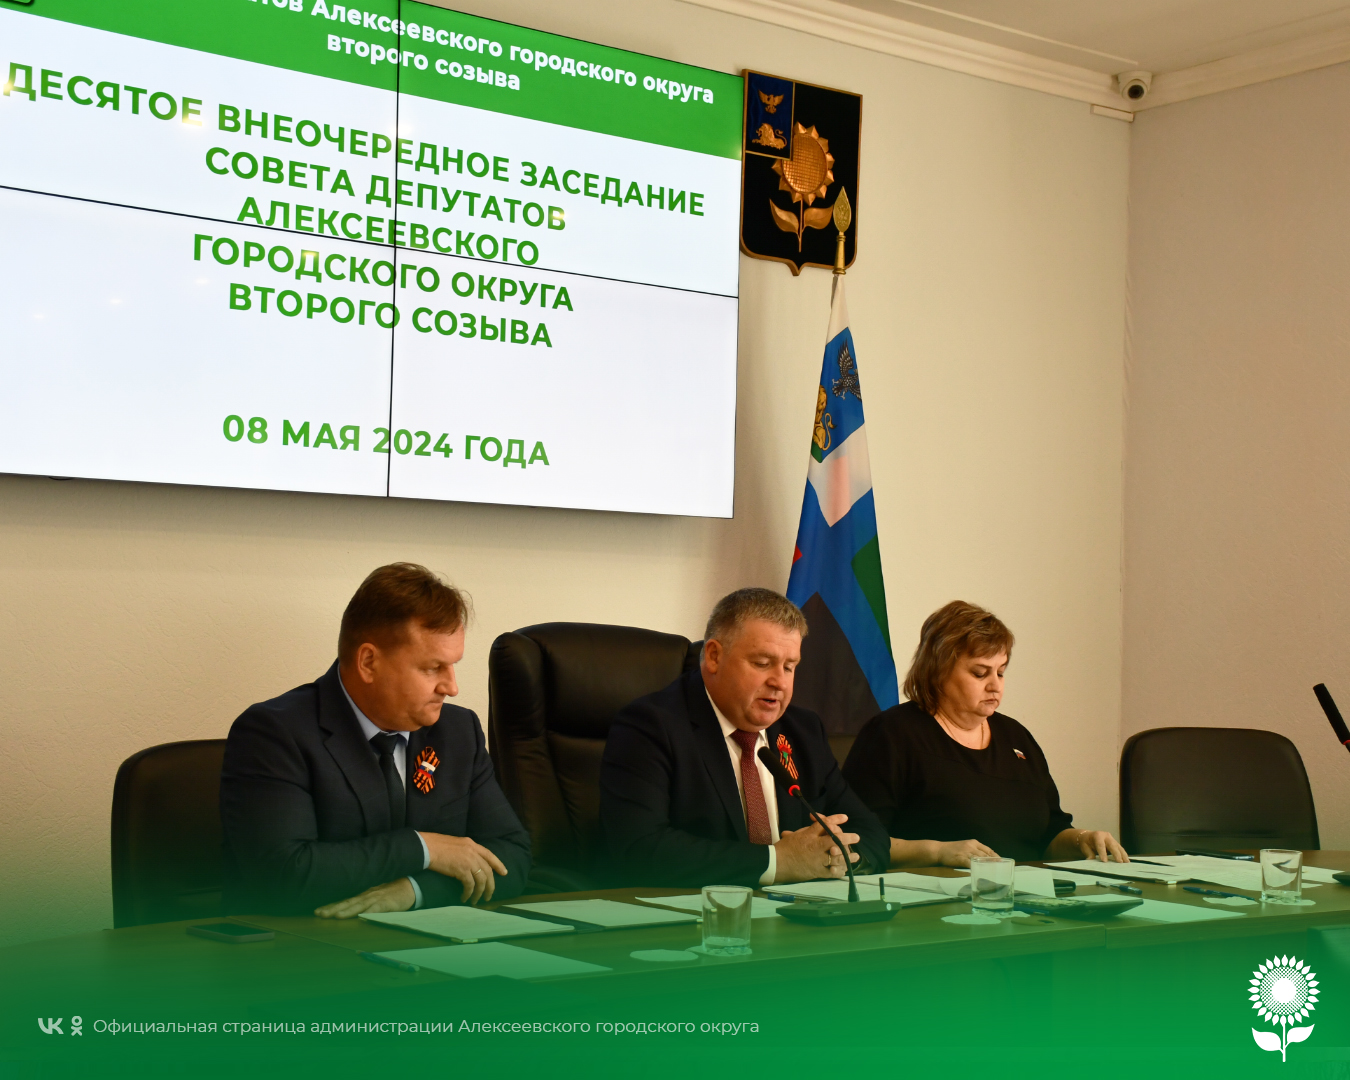 Сегодня состоялось десятое внеочередное заседание Совета депутатов Алексеевского городского округа второго созыва.